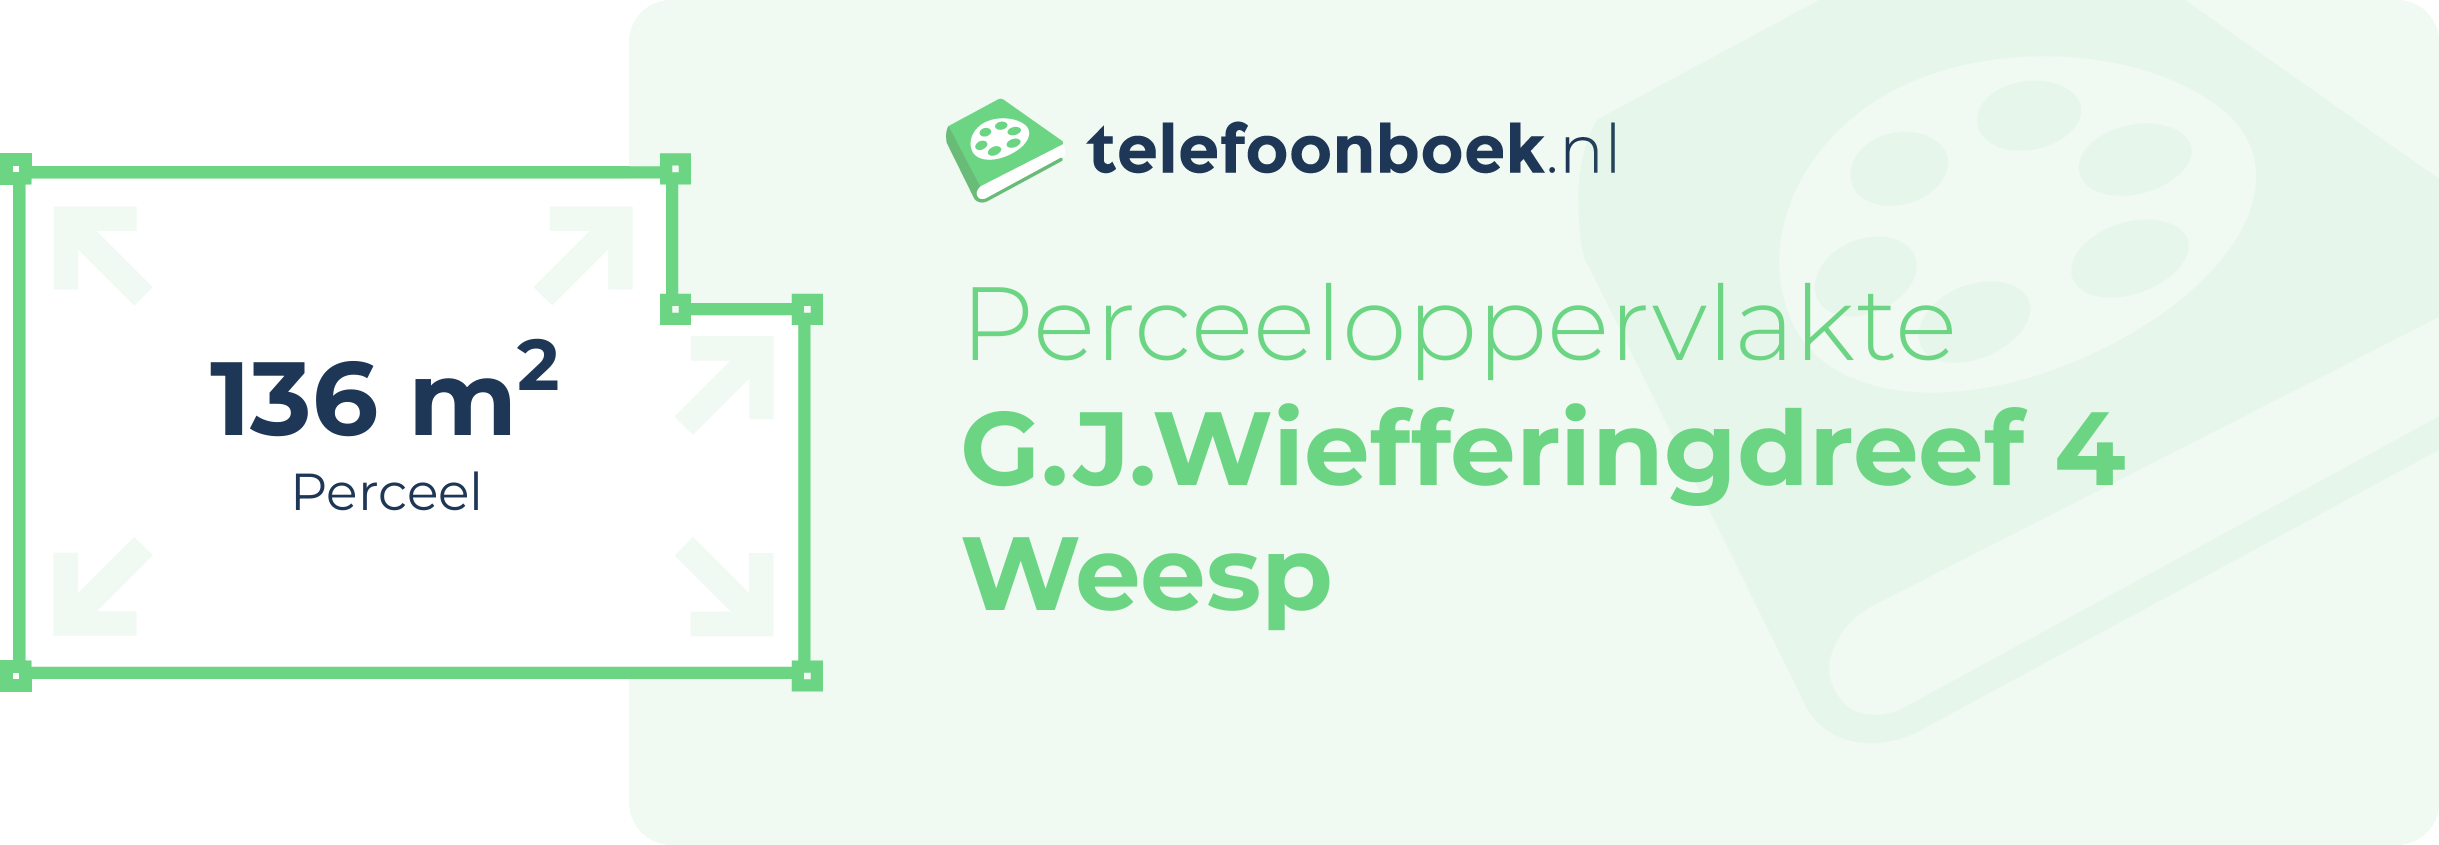 Perceeloppervlakte G.J.Wiefferingdreef 4 Weesp